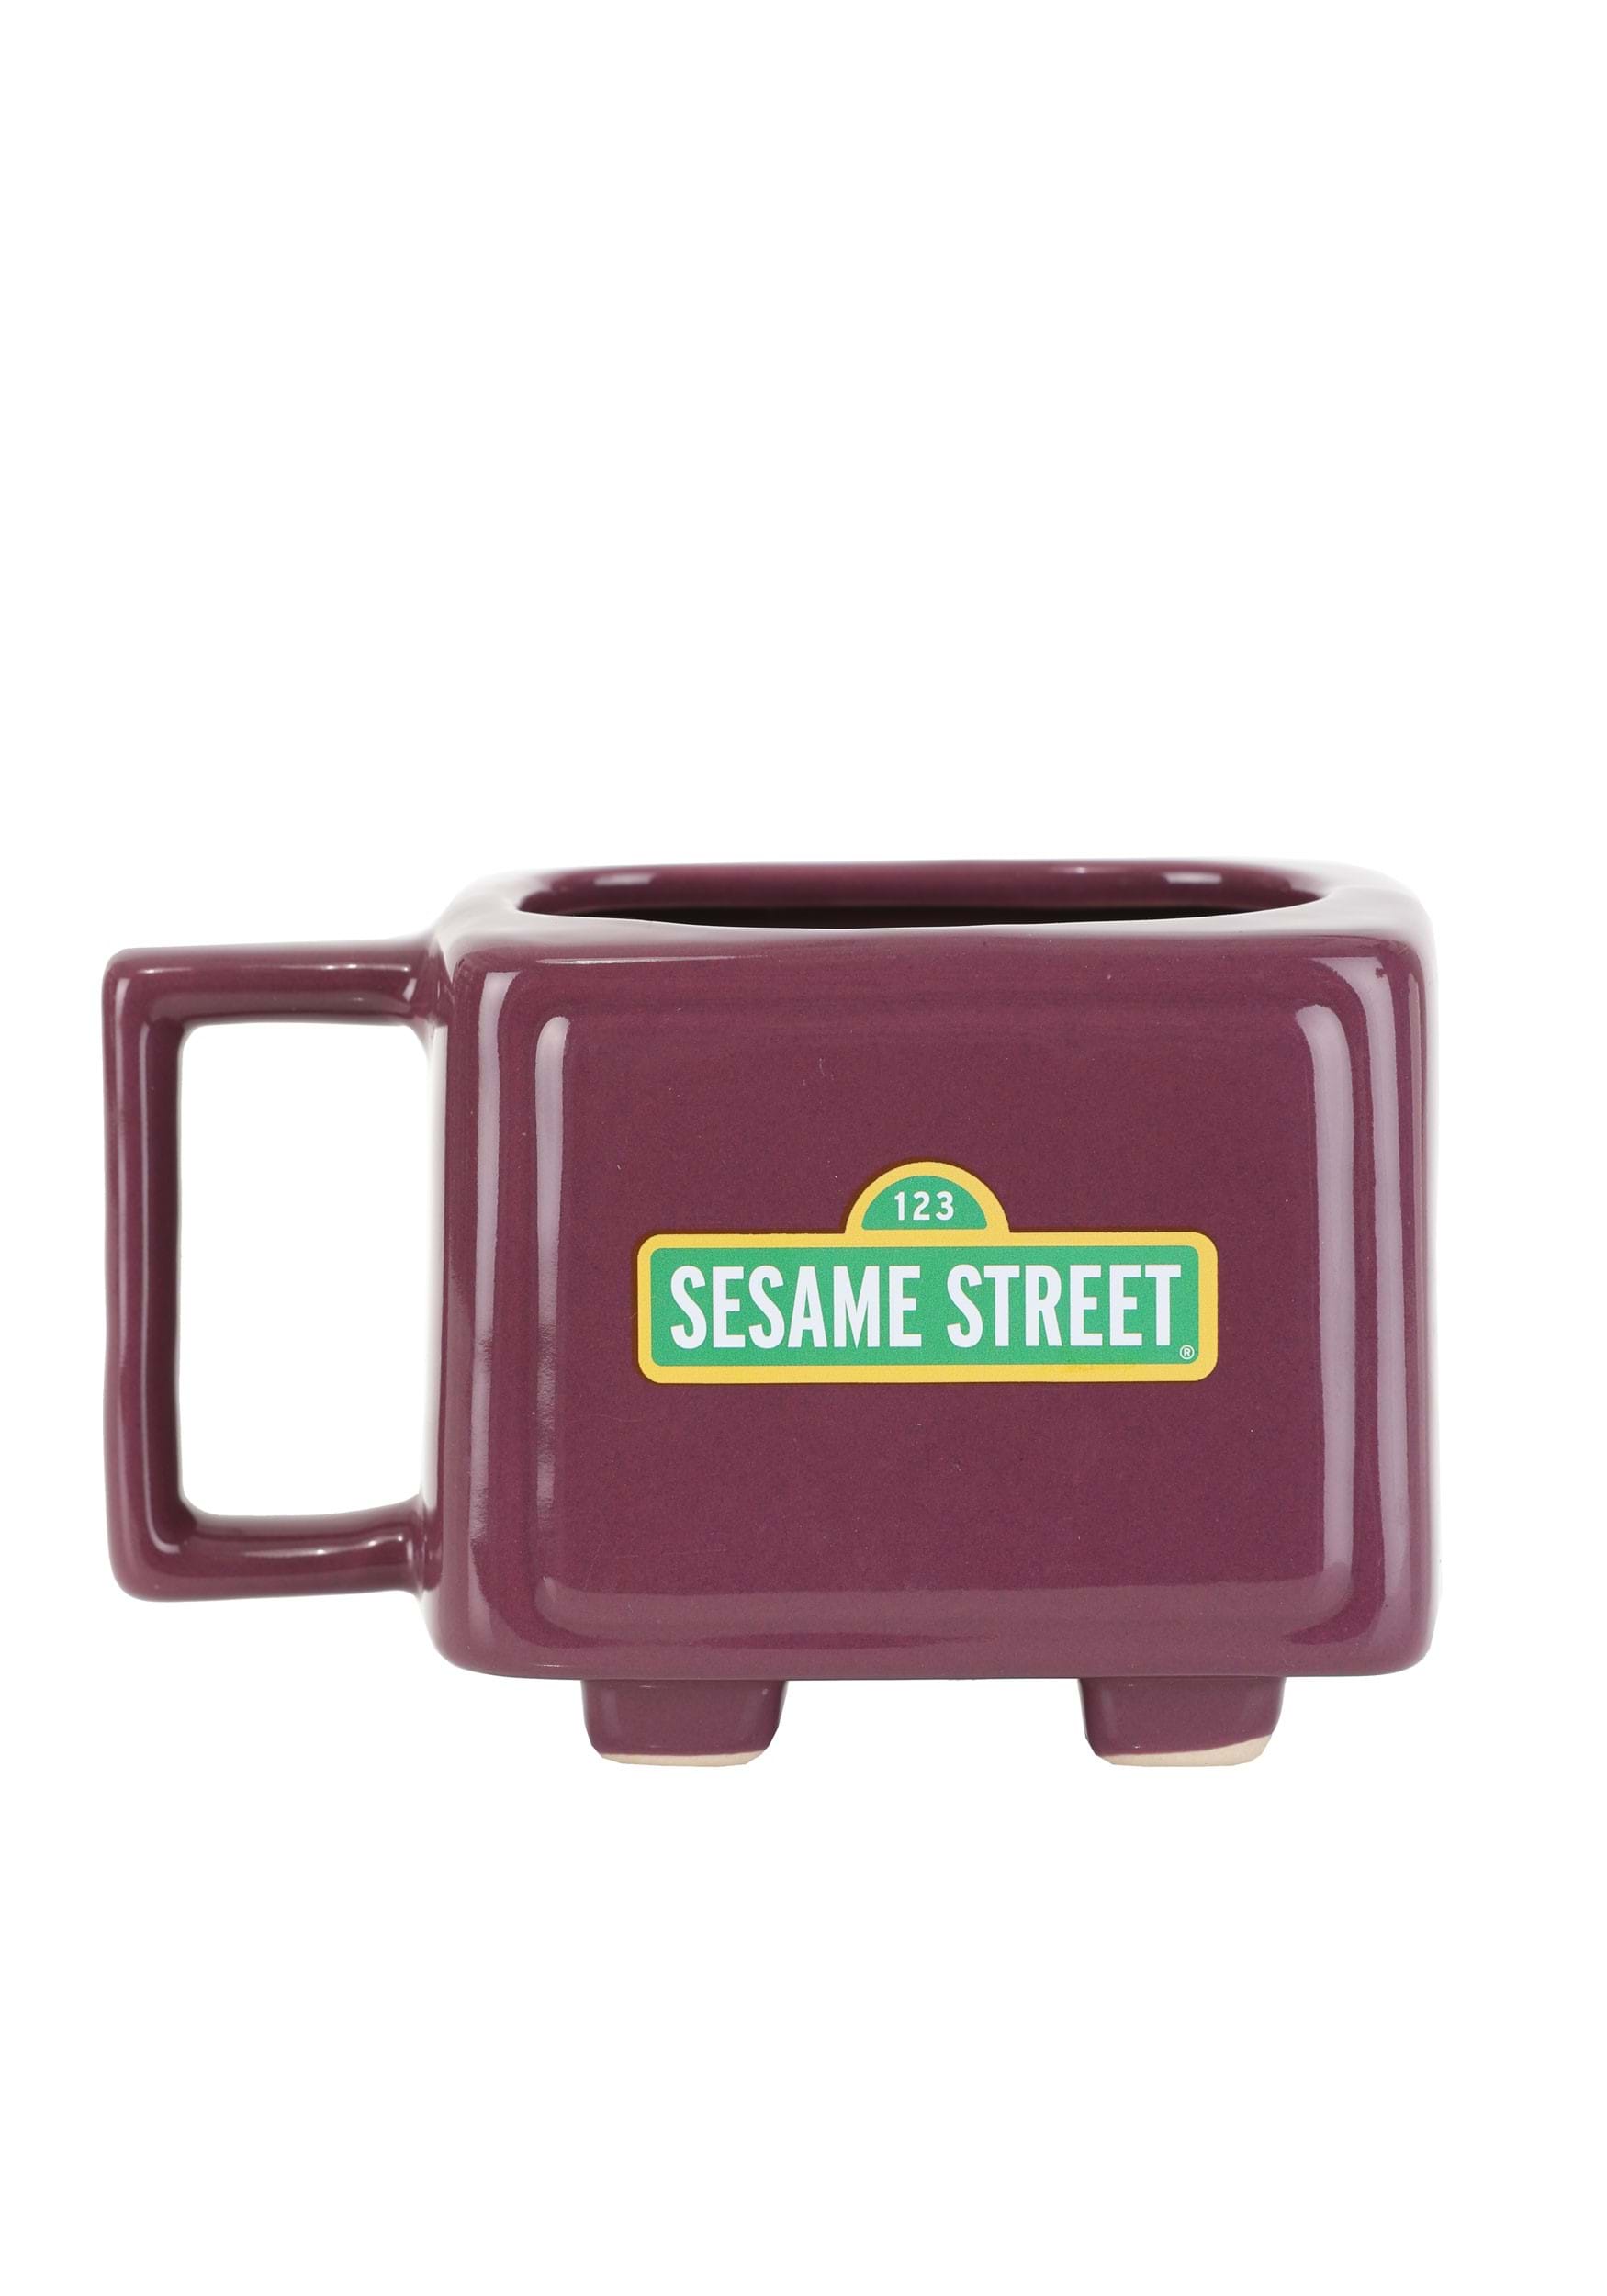 Sesame Street Heat Reveal TV Shape Adult Mug